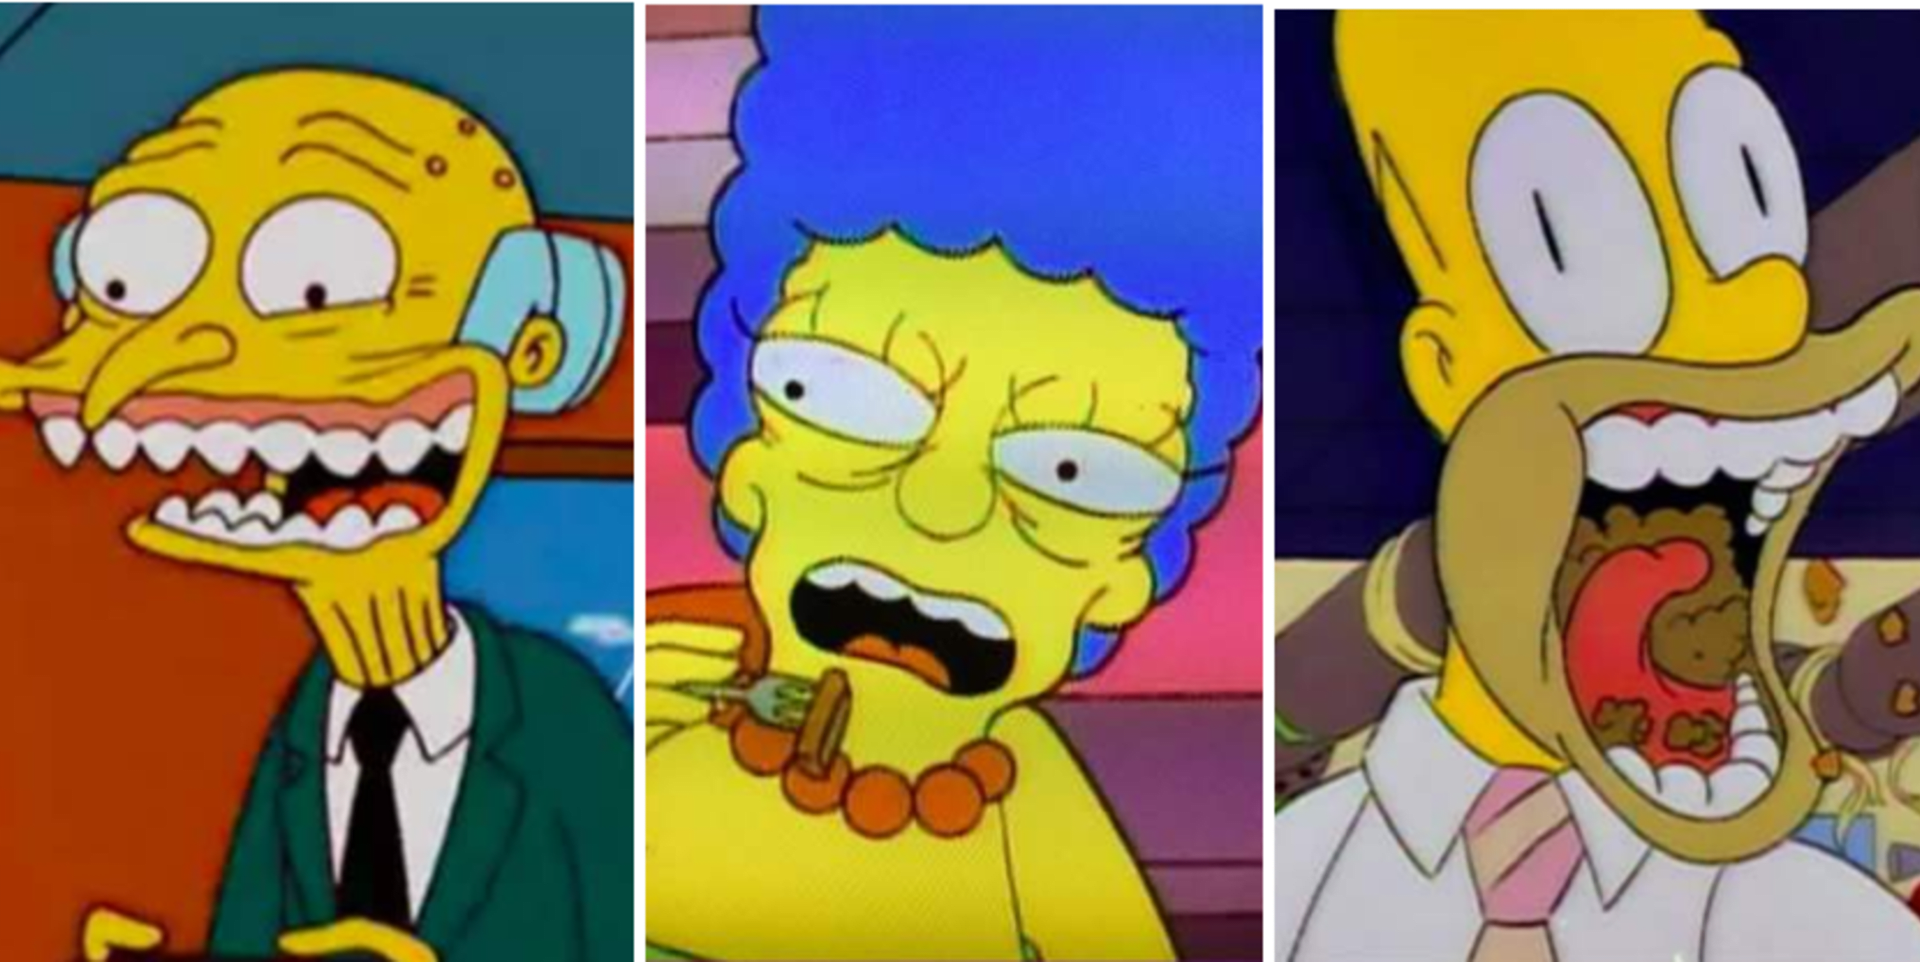 GALERIE: 17 nejšílenějších šklebů ze Simpsonů. Podívejte se, jak se ksichtí Marge, Homer nebo pan Burns! - Obrázek 1